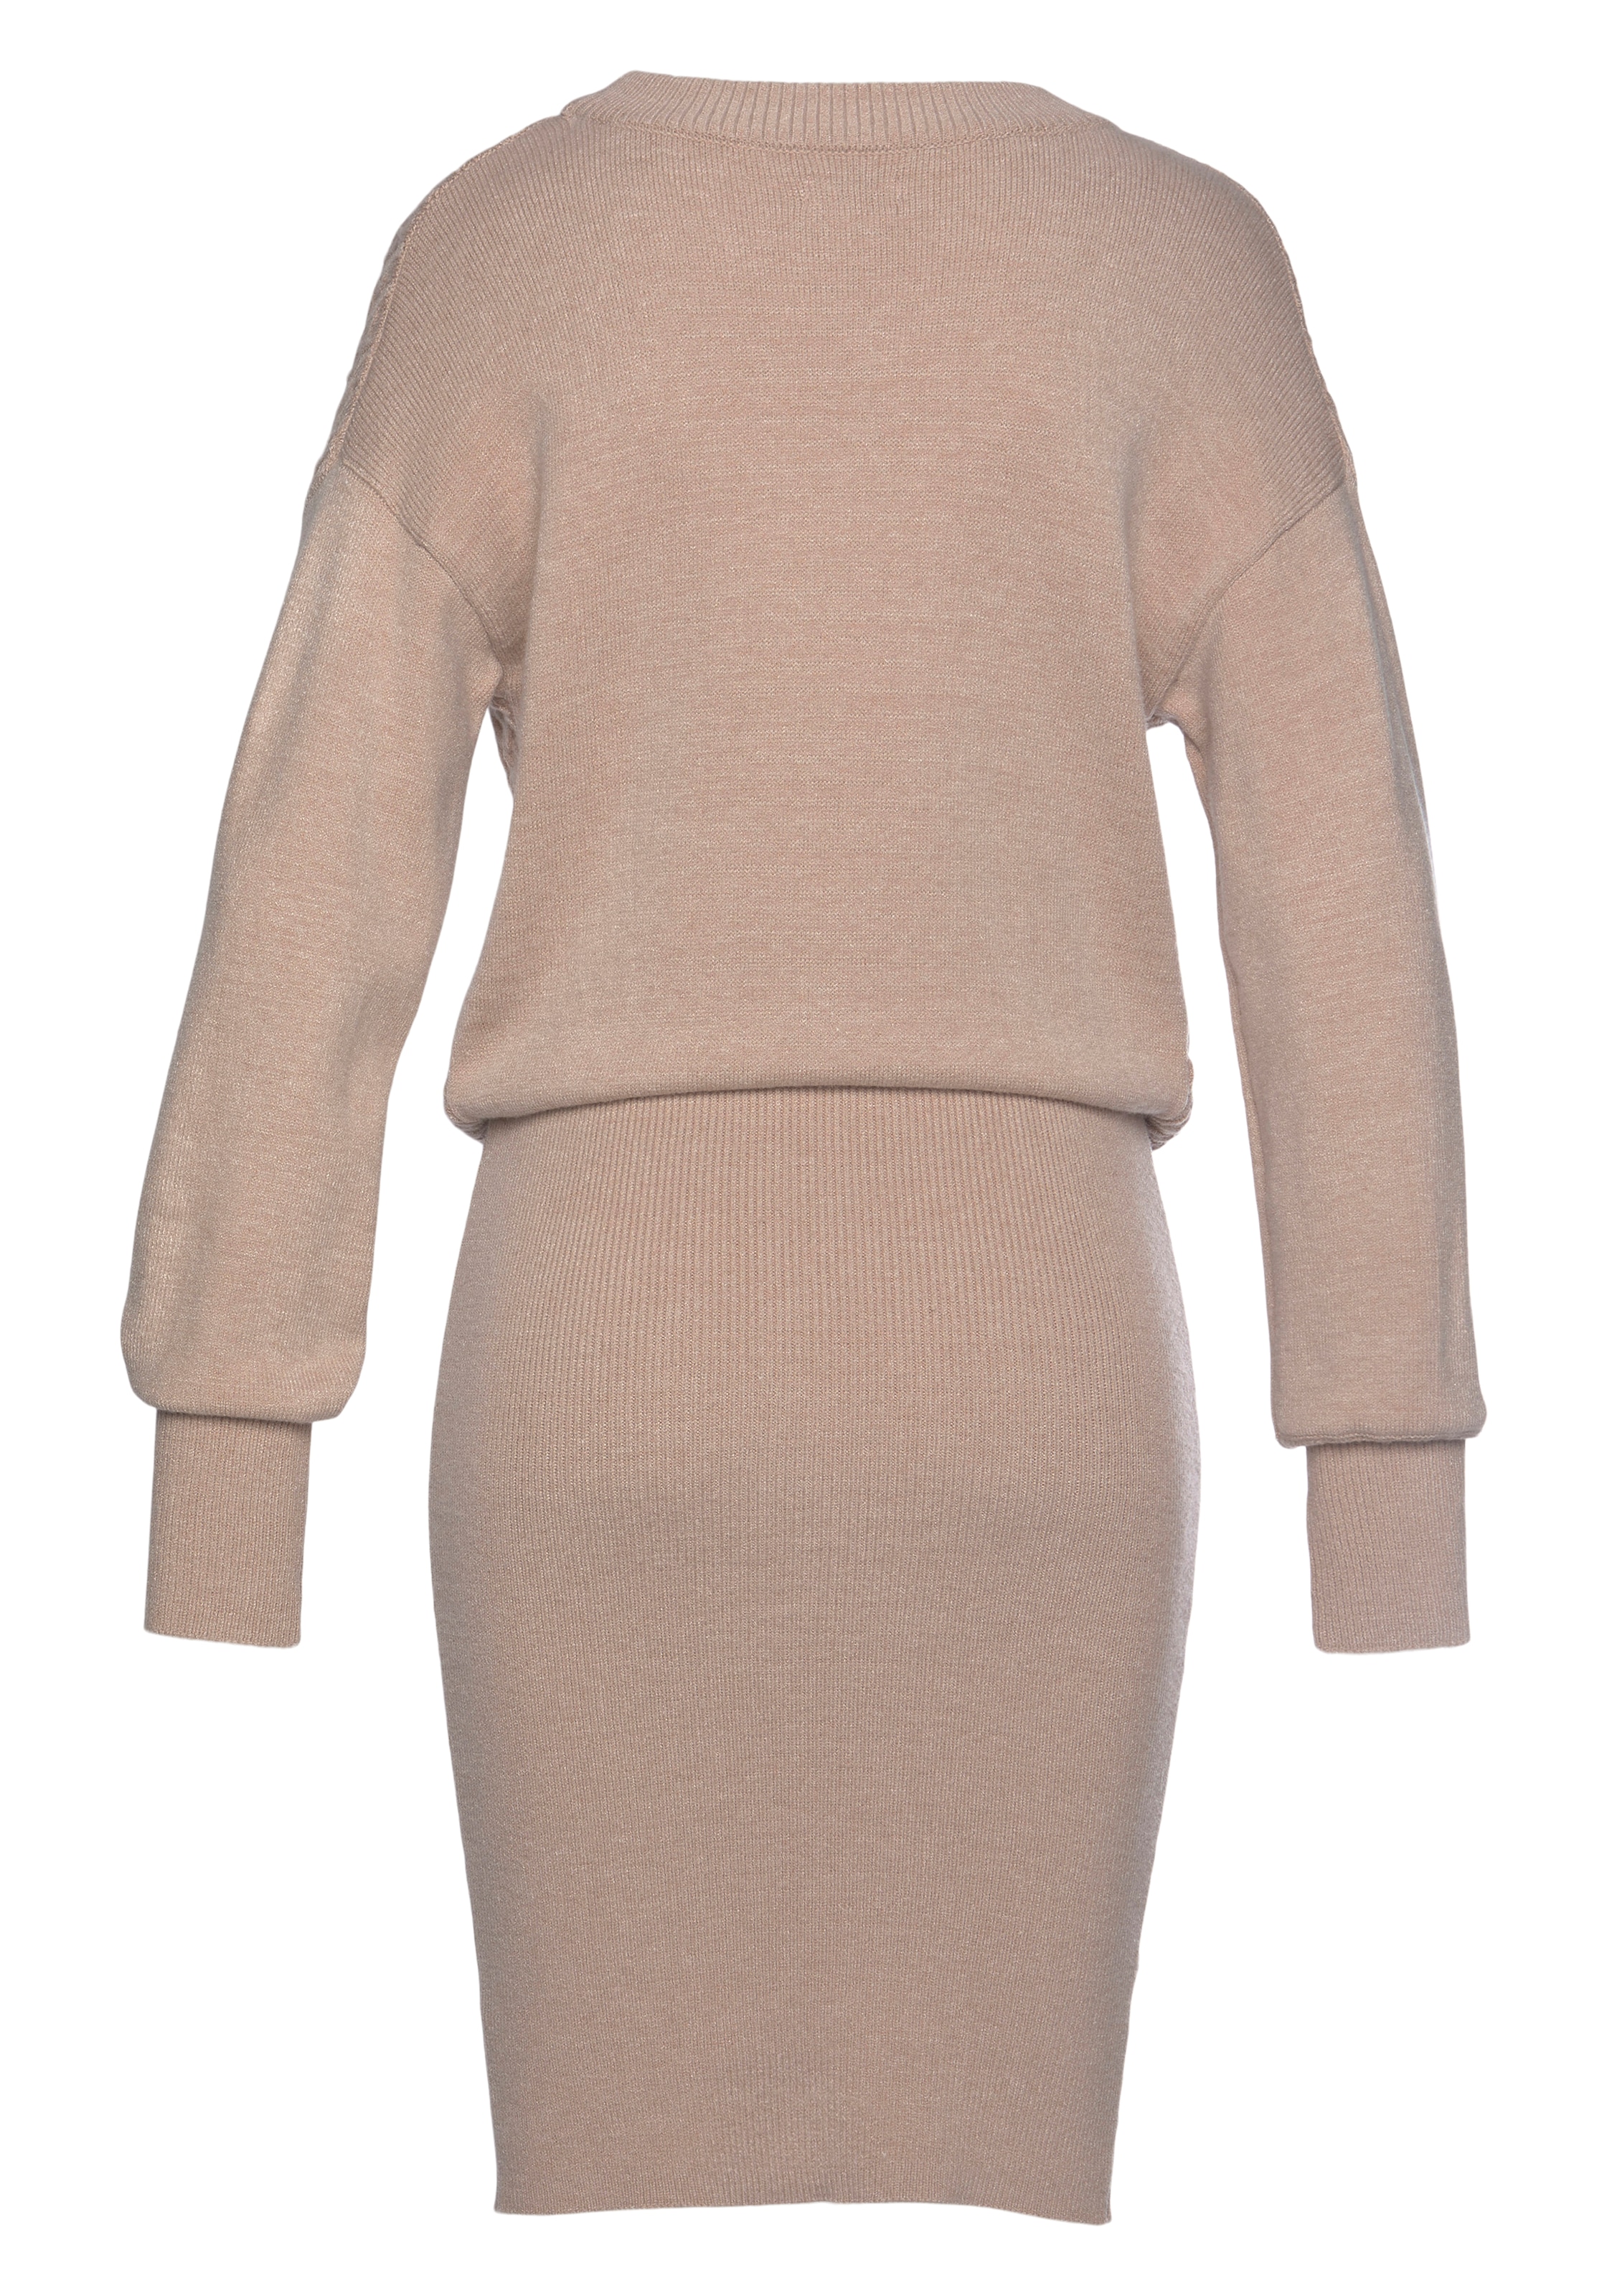 LASCANA Strickkleid, mit Zopfmuster, elegantes Herbst- Winterkleid, Minikleid